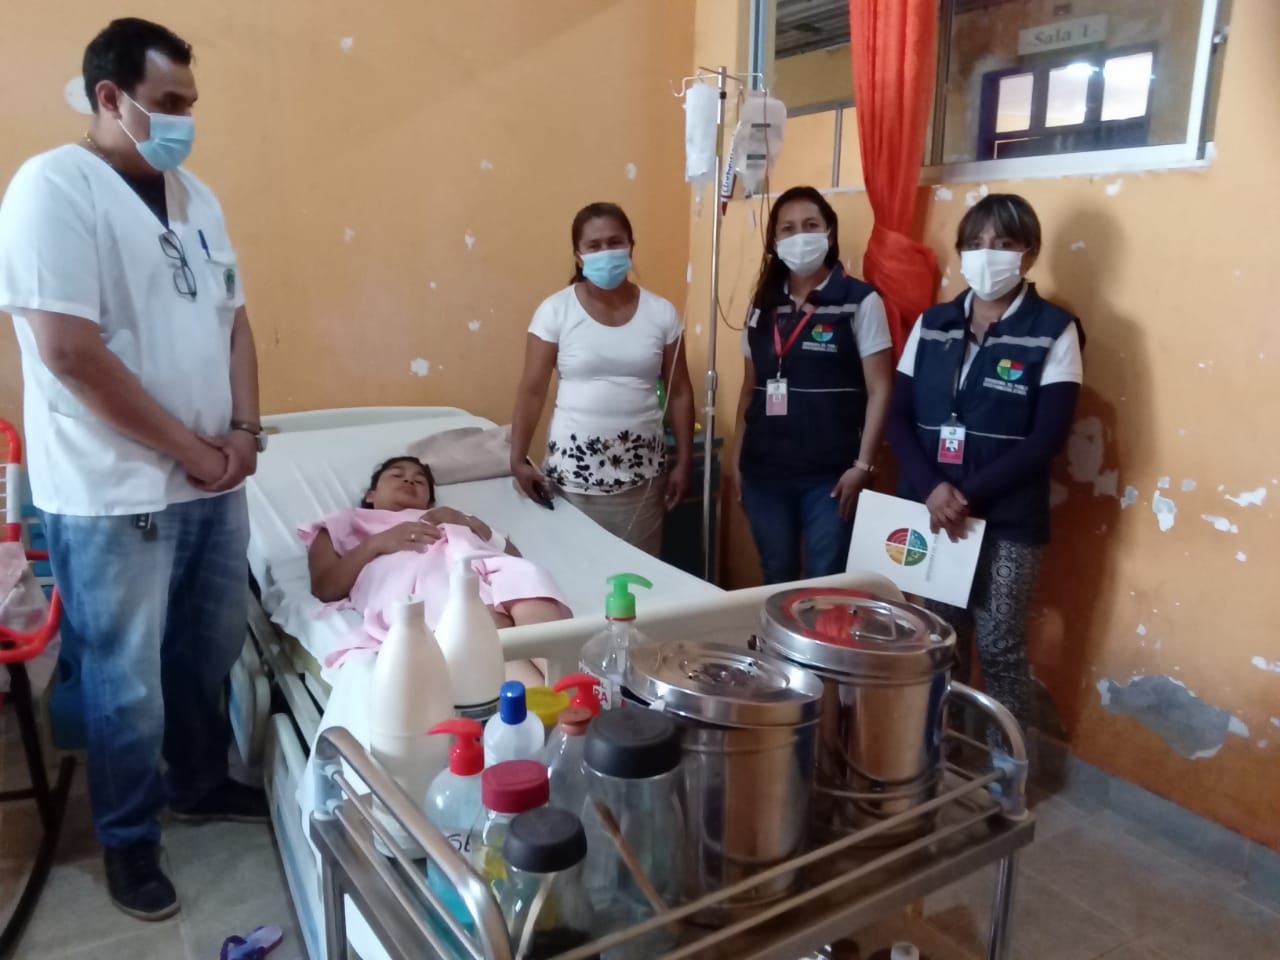 Defensoría del Pueblo investiga presunta negligencia médica en contra de una paciente que dio a luz en la CNS de Riberalta